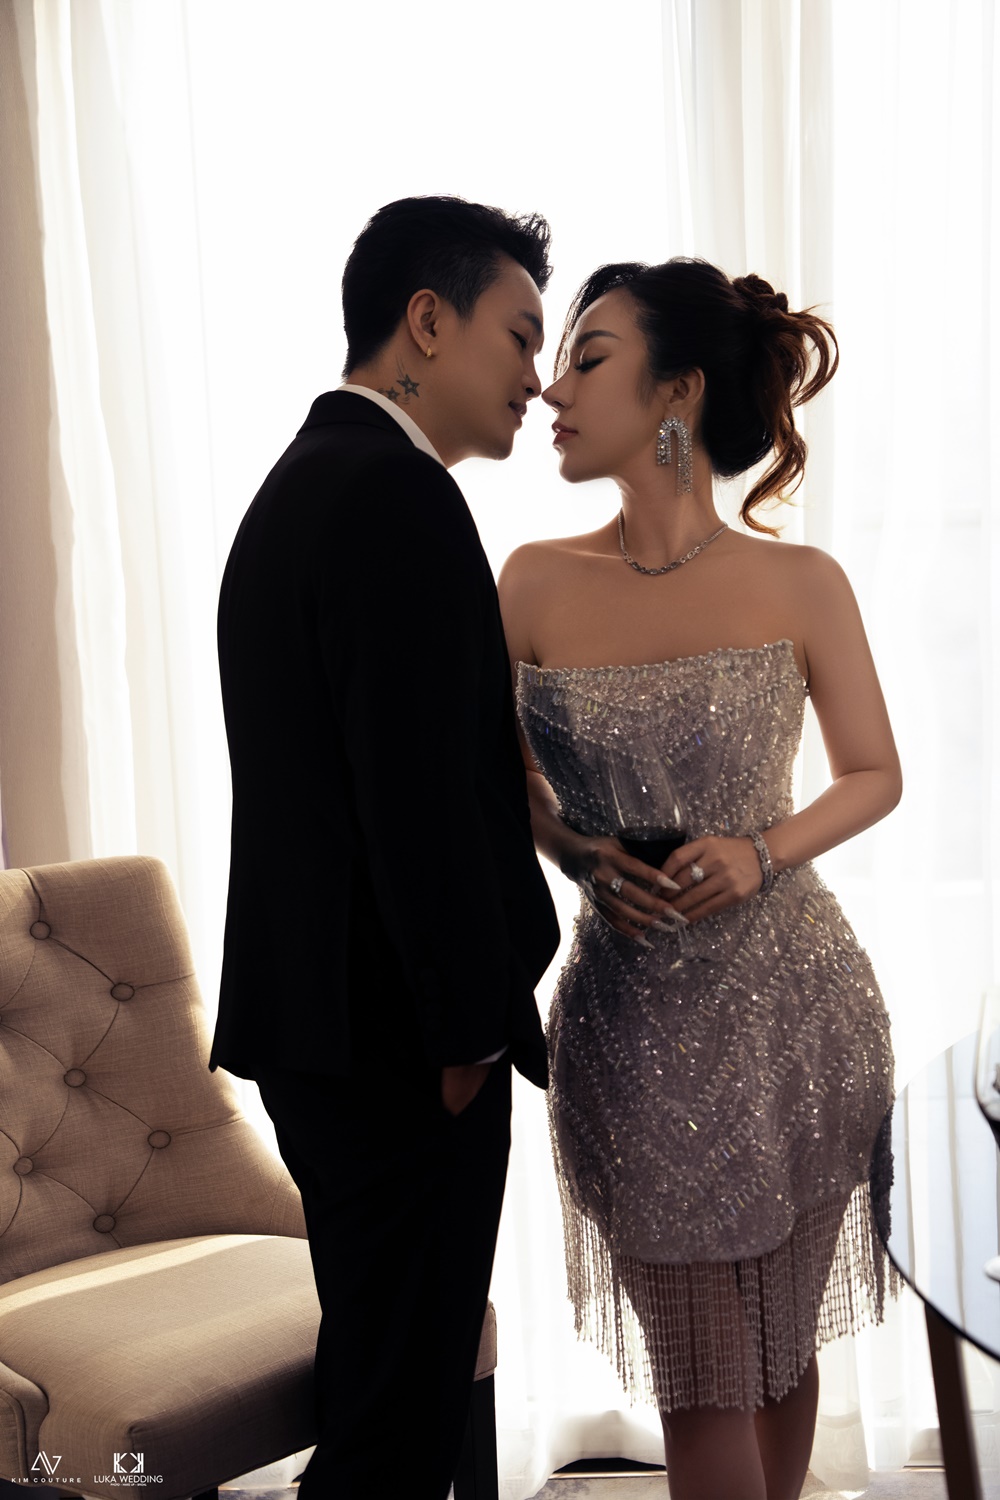 Trọn bộ ảnh cưới nóng bỏng mắt của TiTi (HKT) và bà xã DJ gợi cảm - Ảnh 6.